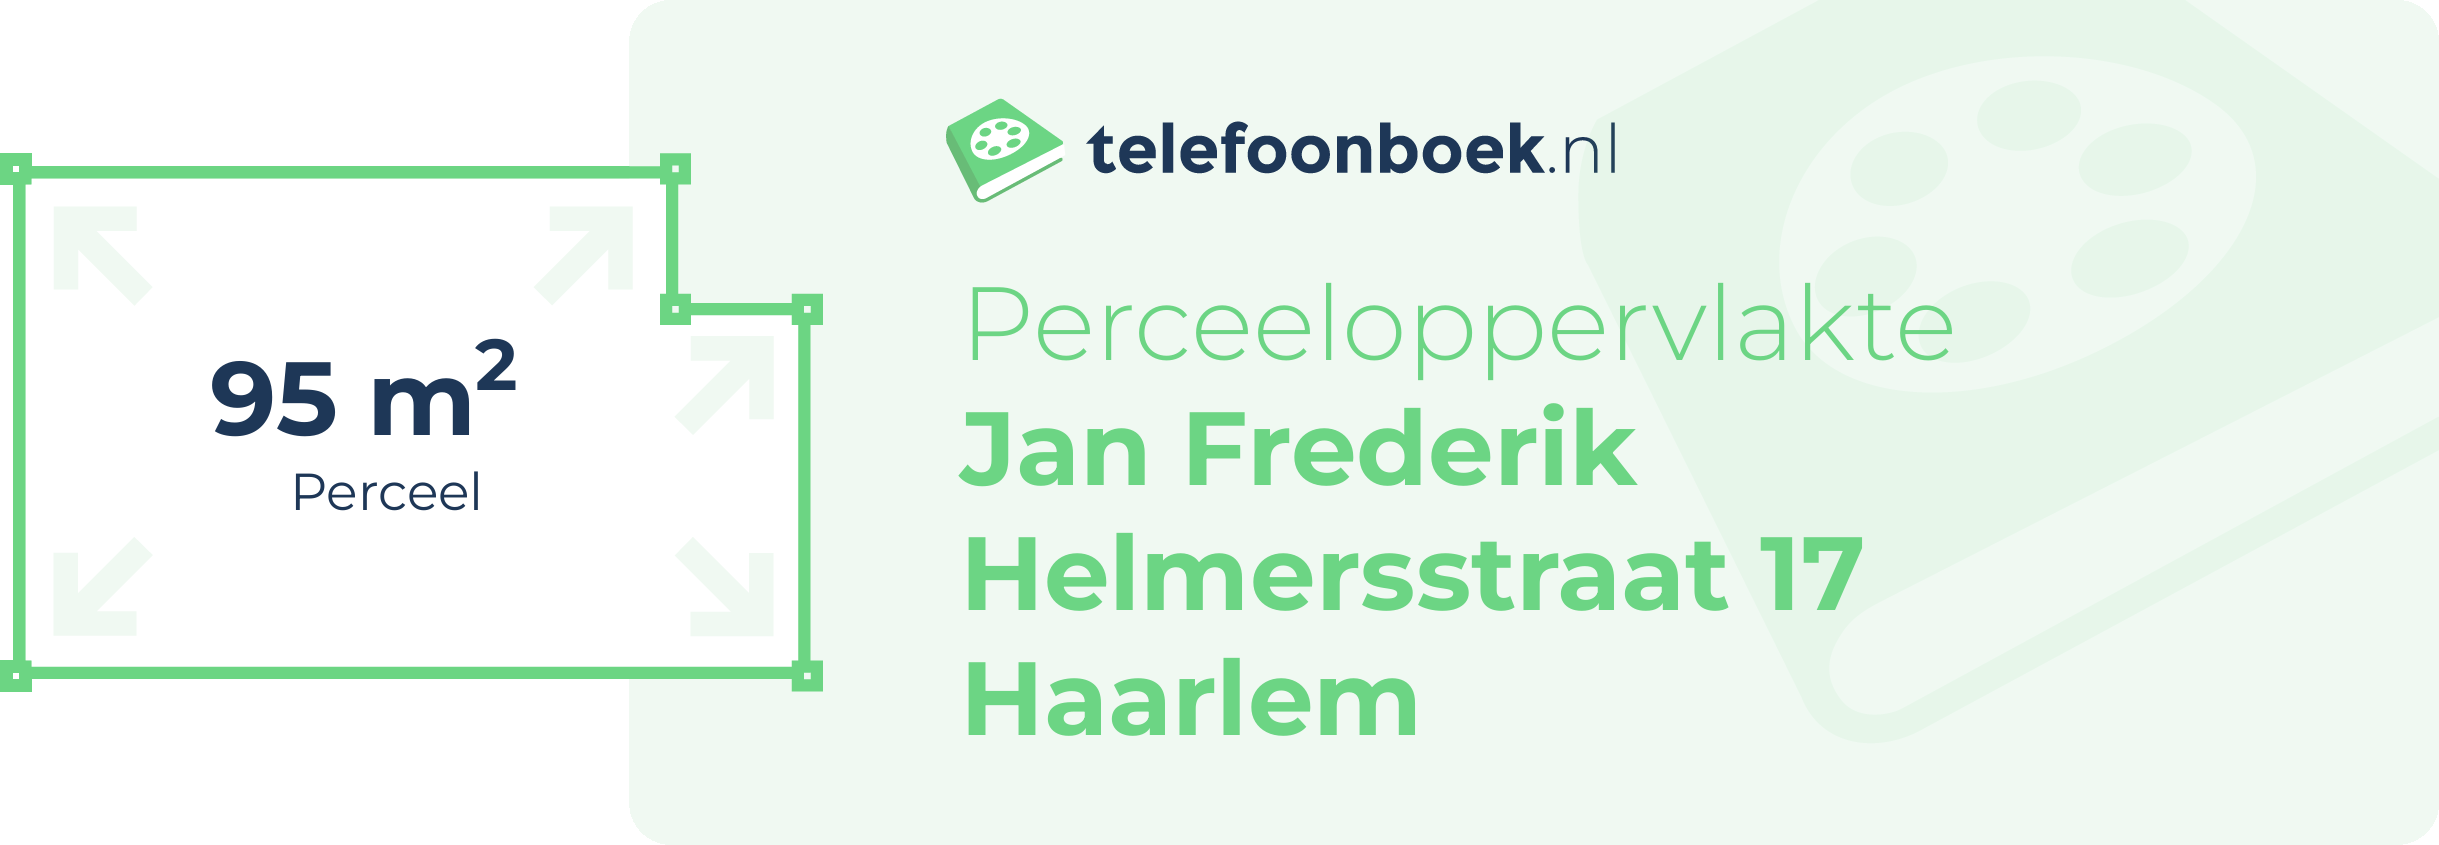 Perceeloppervlakte Jan Frederik Helmersstraat 17 Haarlem